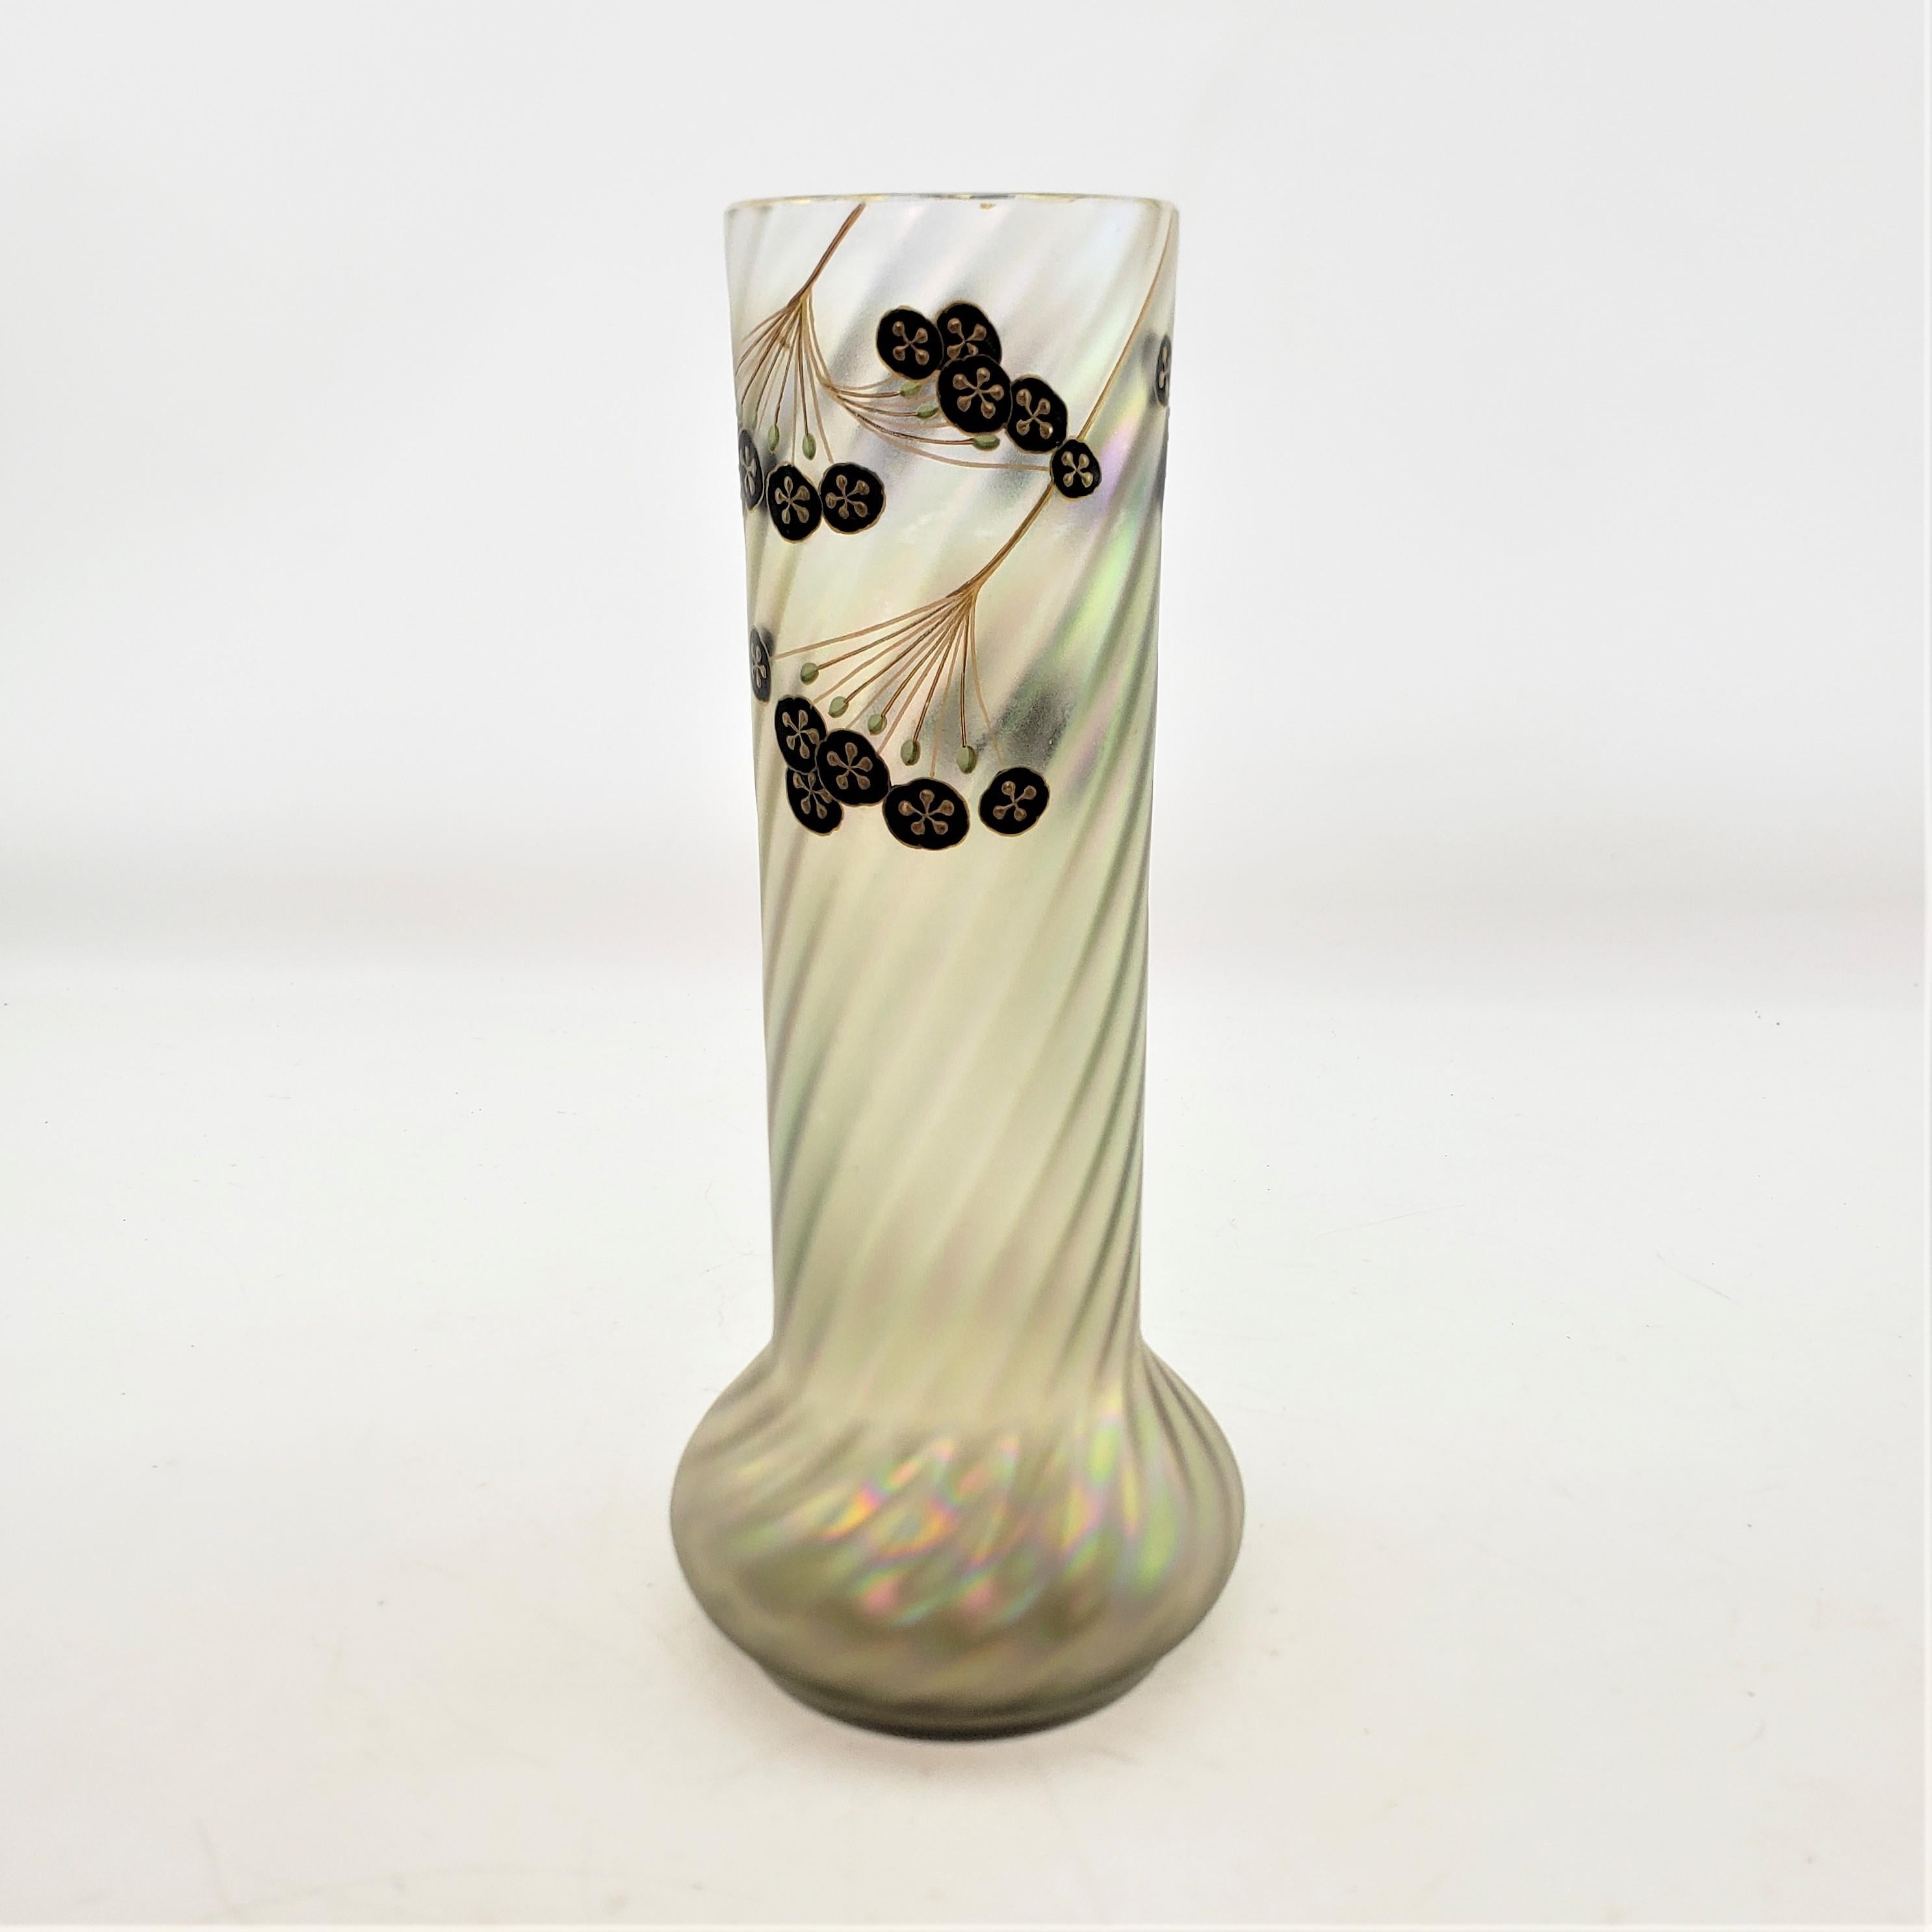 20th Century Antique Art Nouveau Iridescent Art Glass Vase with Enamel Floral Decoration For Sale